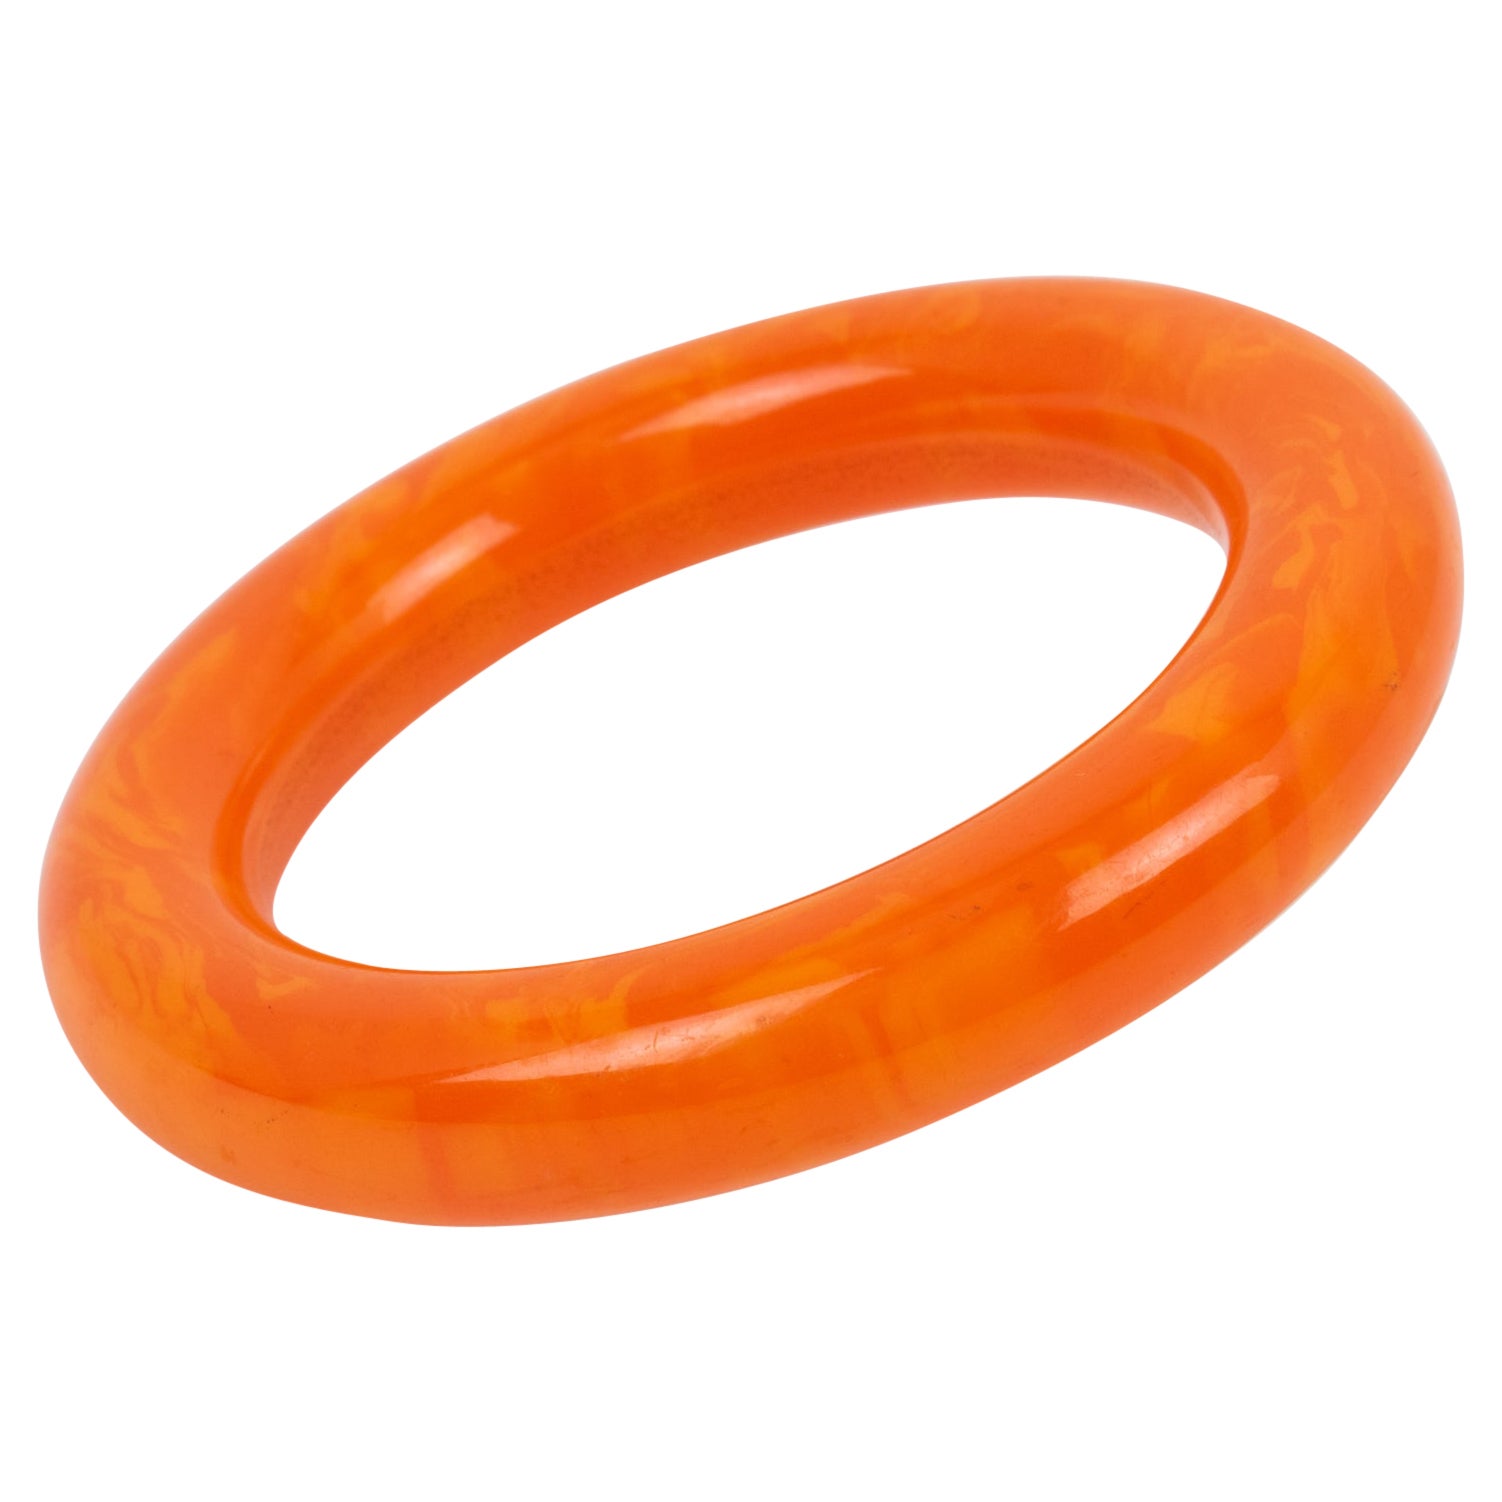 Bakelite Bracelet Bangle Tangerine Orange Marble For Sale